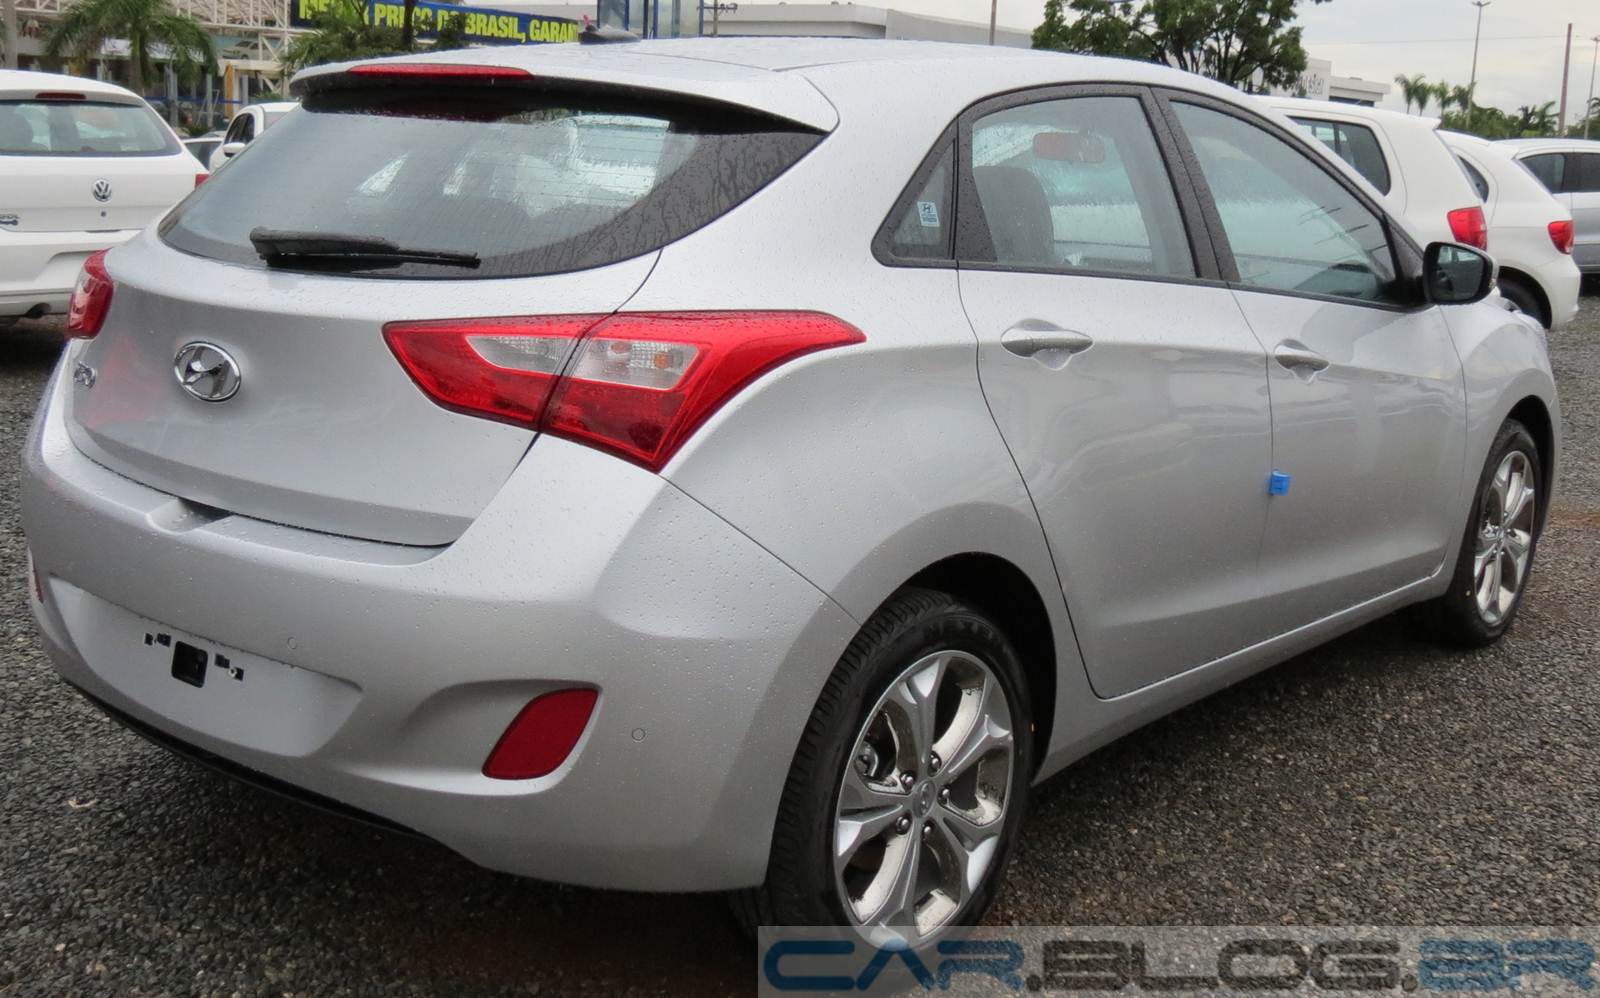 Hyundai i30 2014 fotos, preços, itens de série e ficha